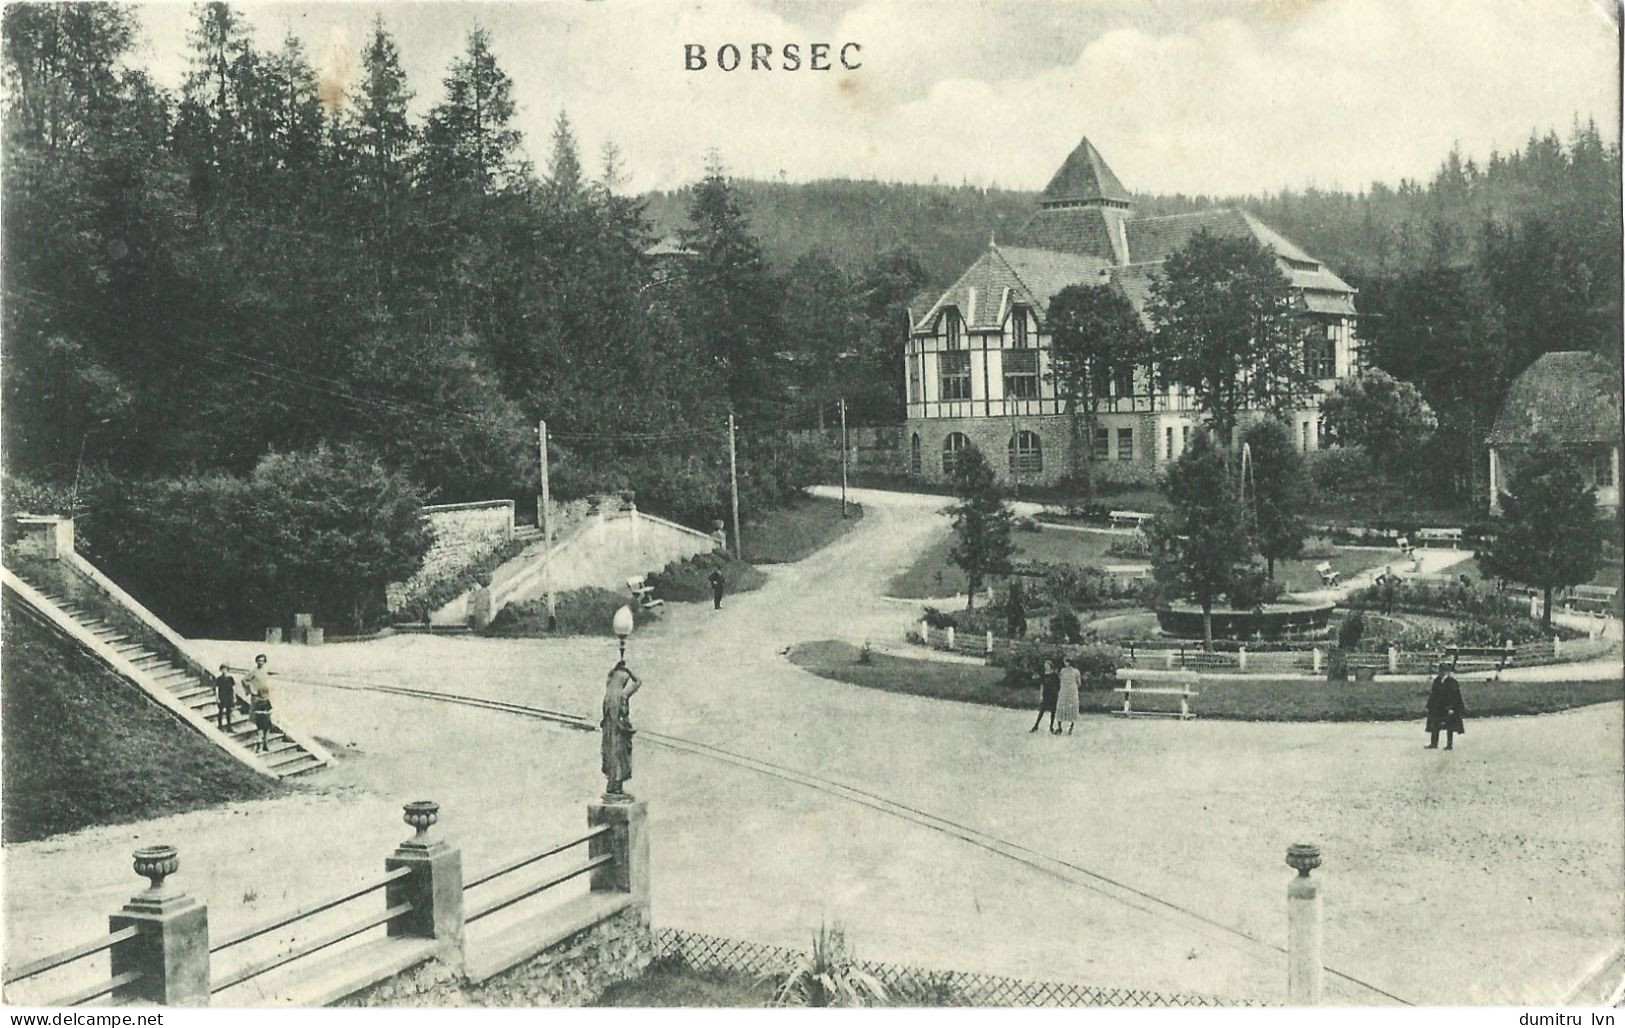 ROMANIA 1930 BORSEC VIEW, BUILDINGS, ARCHITECTURE, PARK, PEOPLE, FOREST - Roumanie